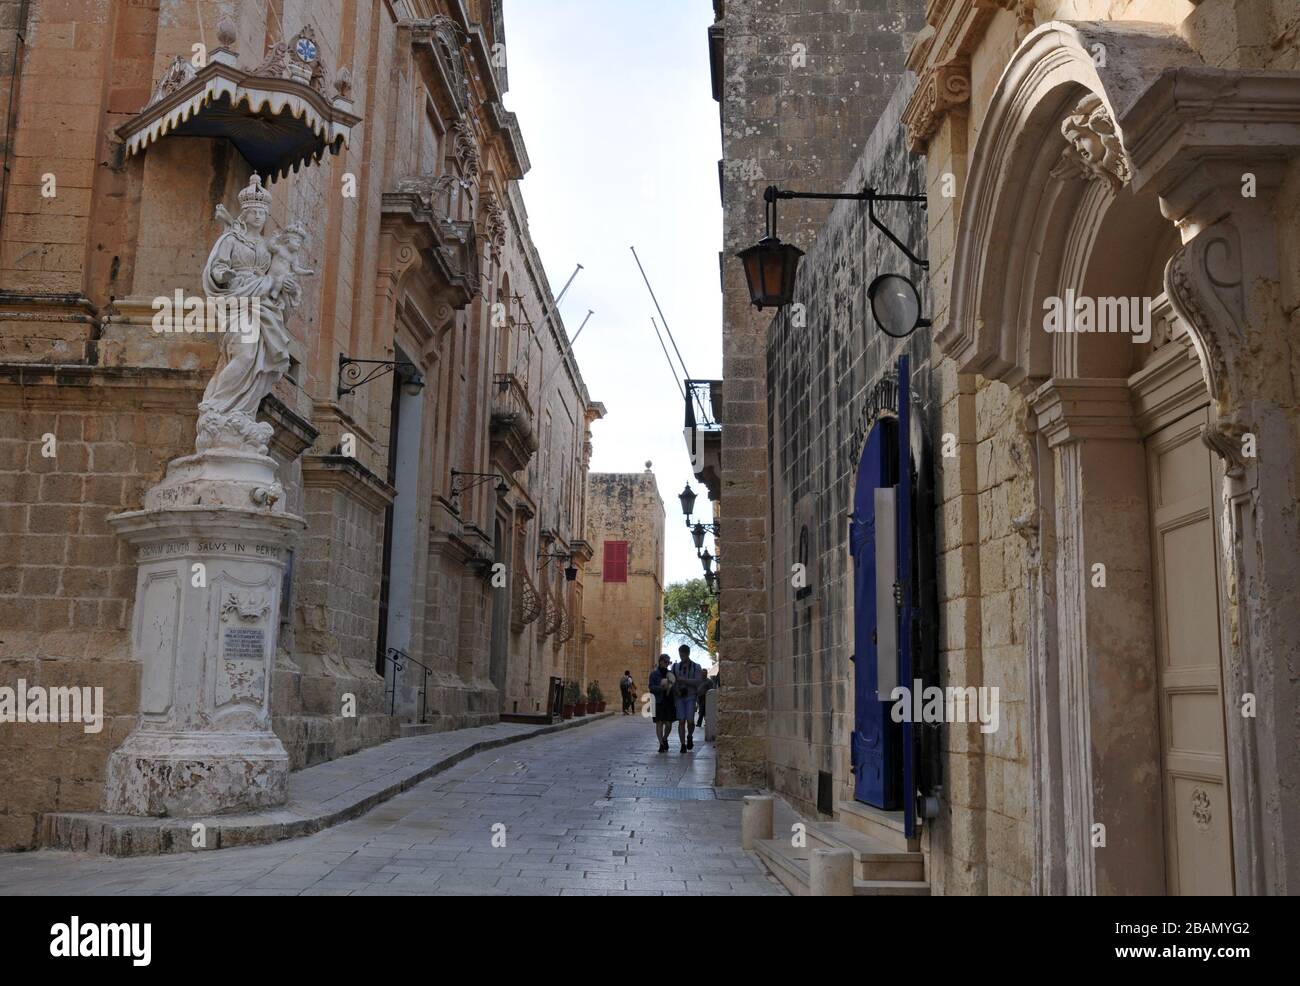 Die Menschen gehen entlang einer Straße in der historischen ummauerten Stadt Mdina, Malta. Bekannt als die Stille Stadt, ist Mdina ein beliebtes Ziel für Touristen. Stockfoto